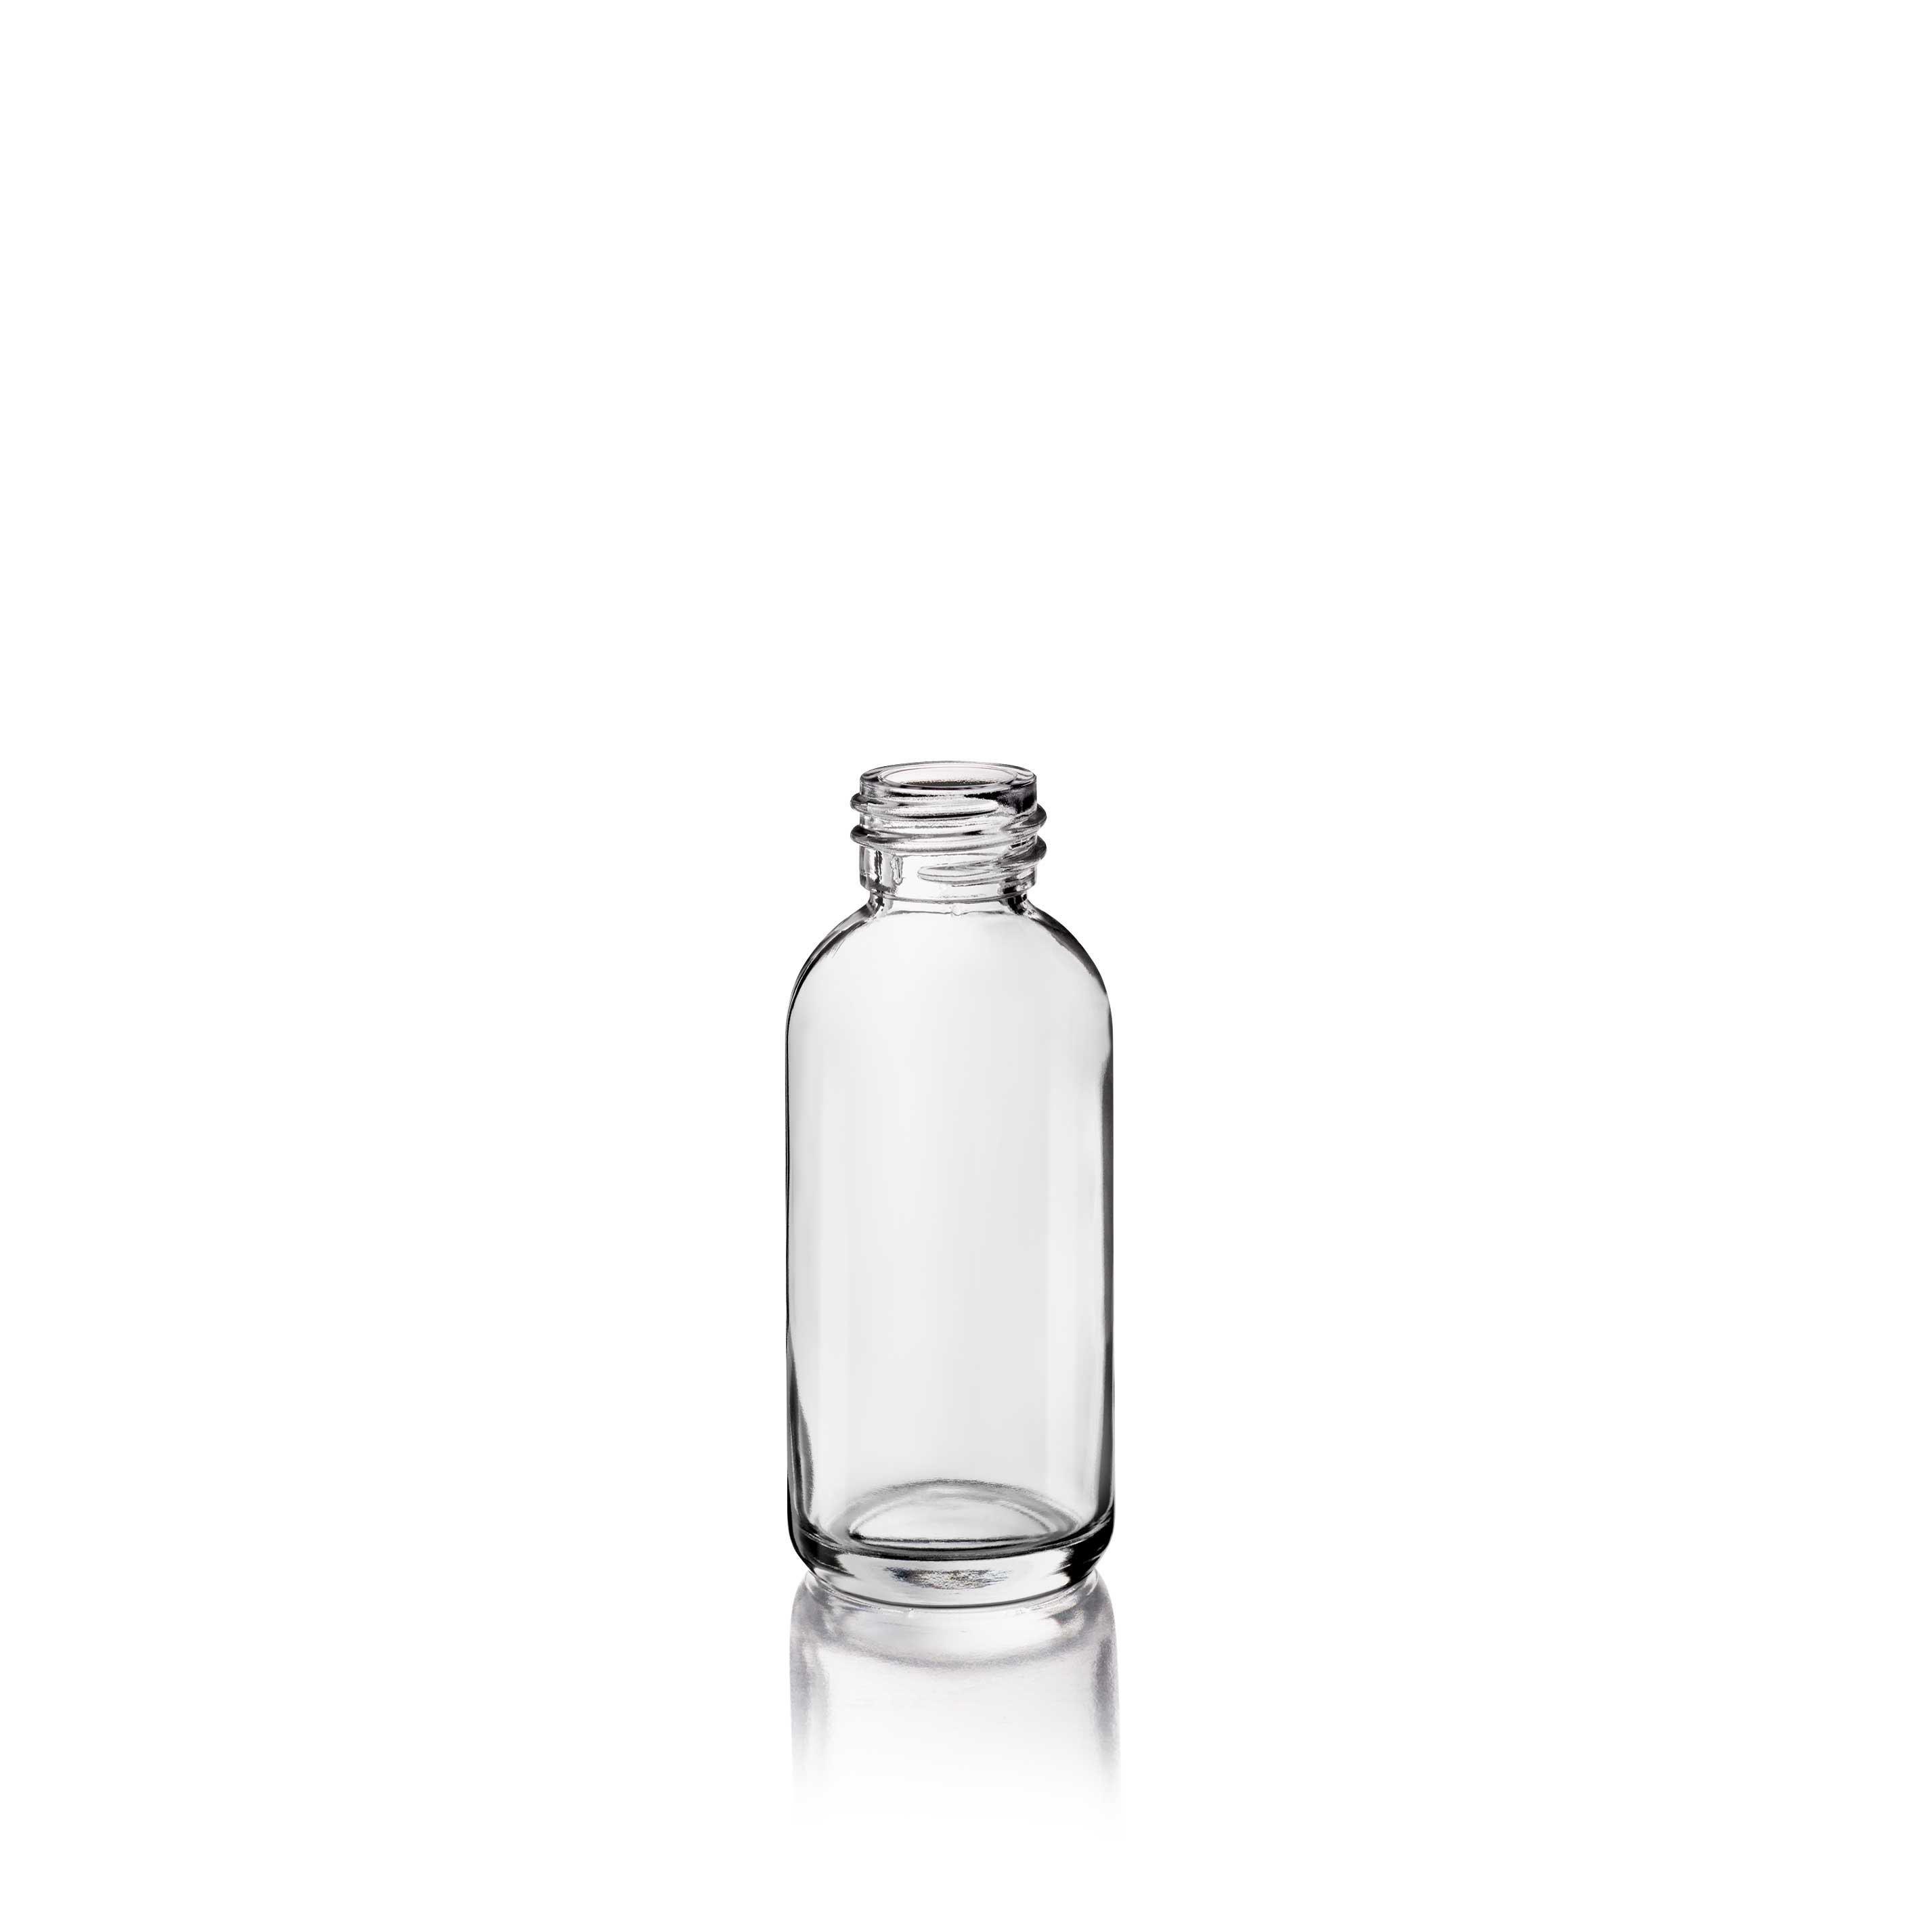 Cosmetic bottle Linden Light Weight 30ml, 20/410, Flint